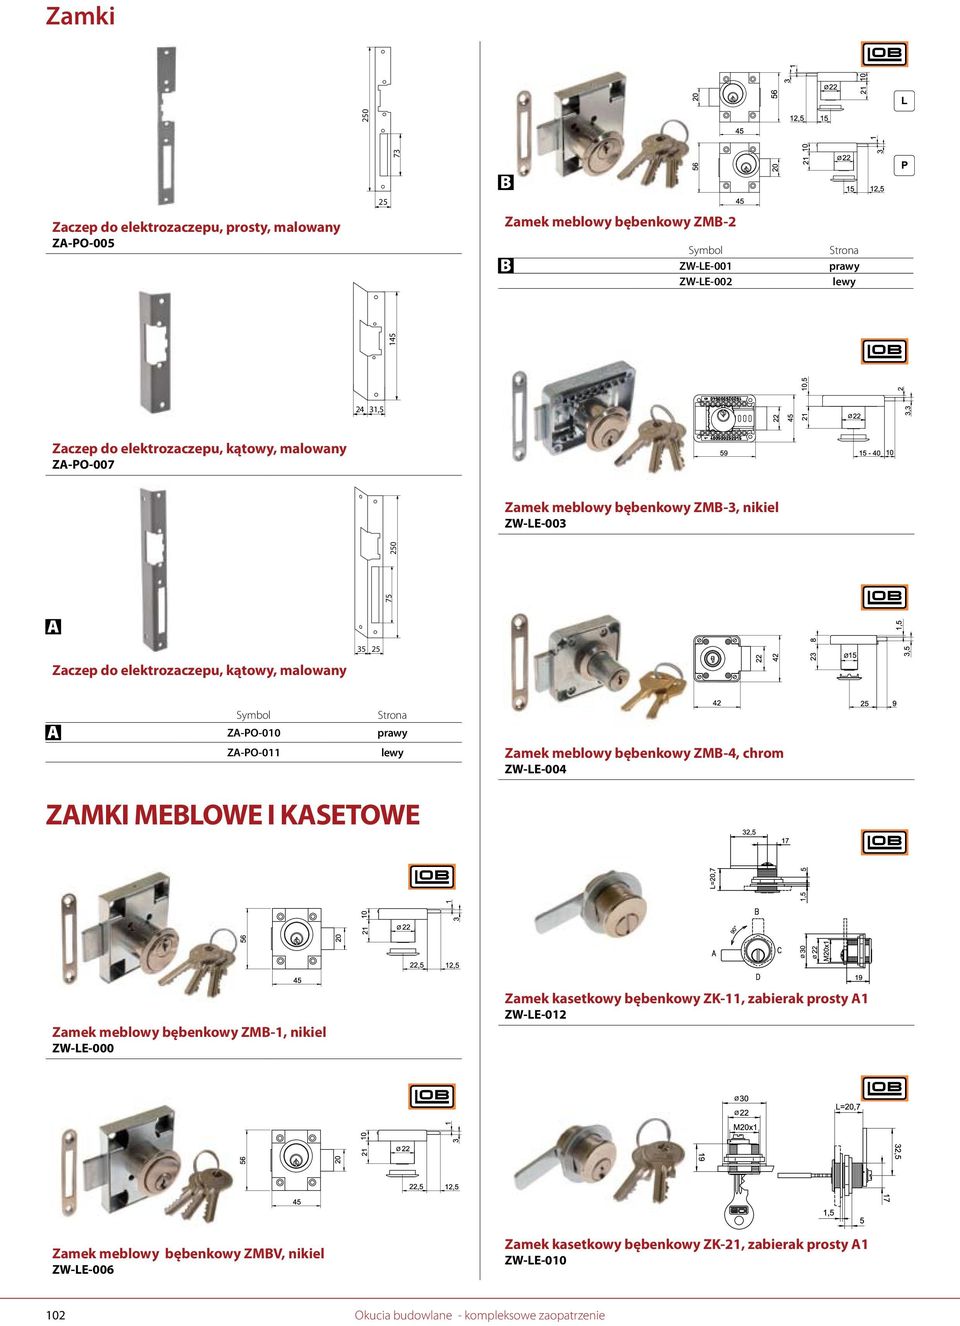 meblowy bębenkowy ZM-4, chrom ZW-LE-004 ZMKI MELOWE I KSETOWE Zamek meblowy bębenkowy ZM-1, nikiel ZW-LE-000 Zamek kasetkowy bębenkowy ZK-, zabierak